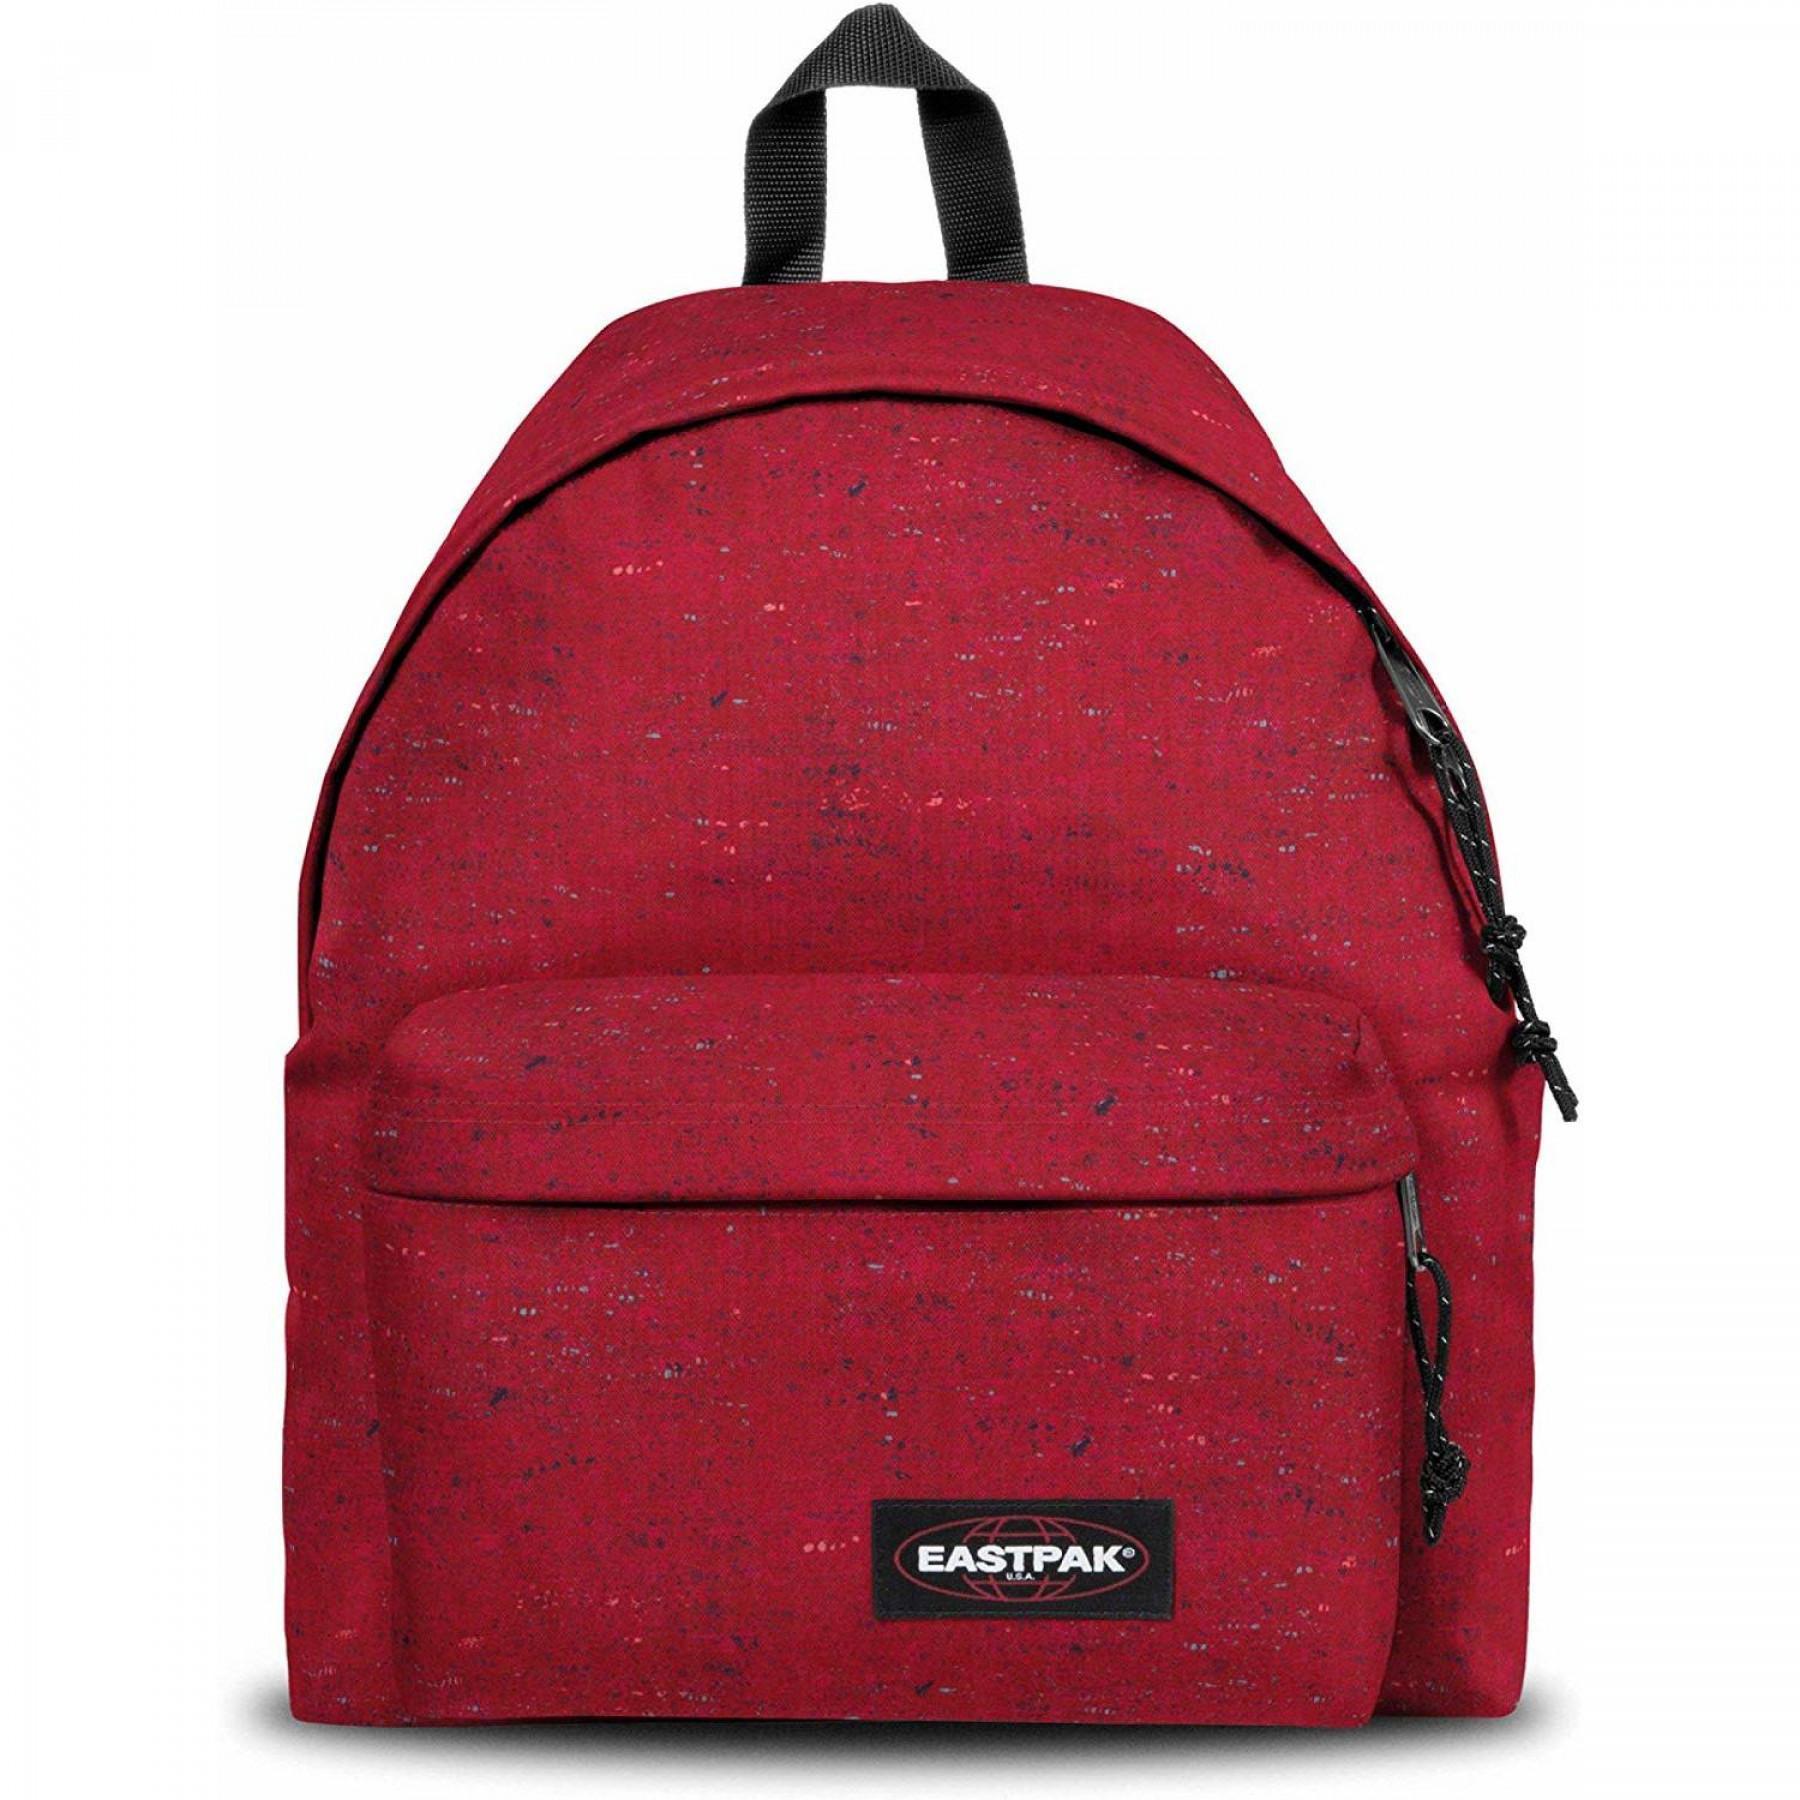 Backpack Eastpak Padded